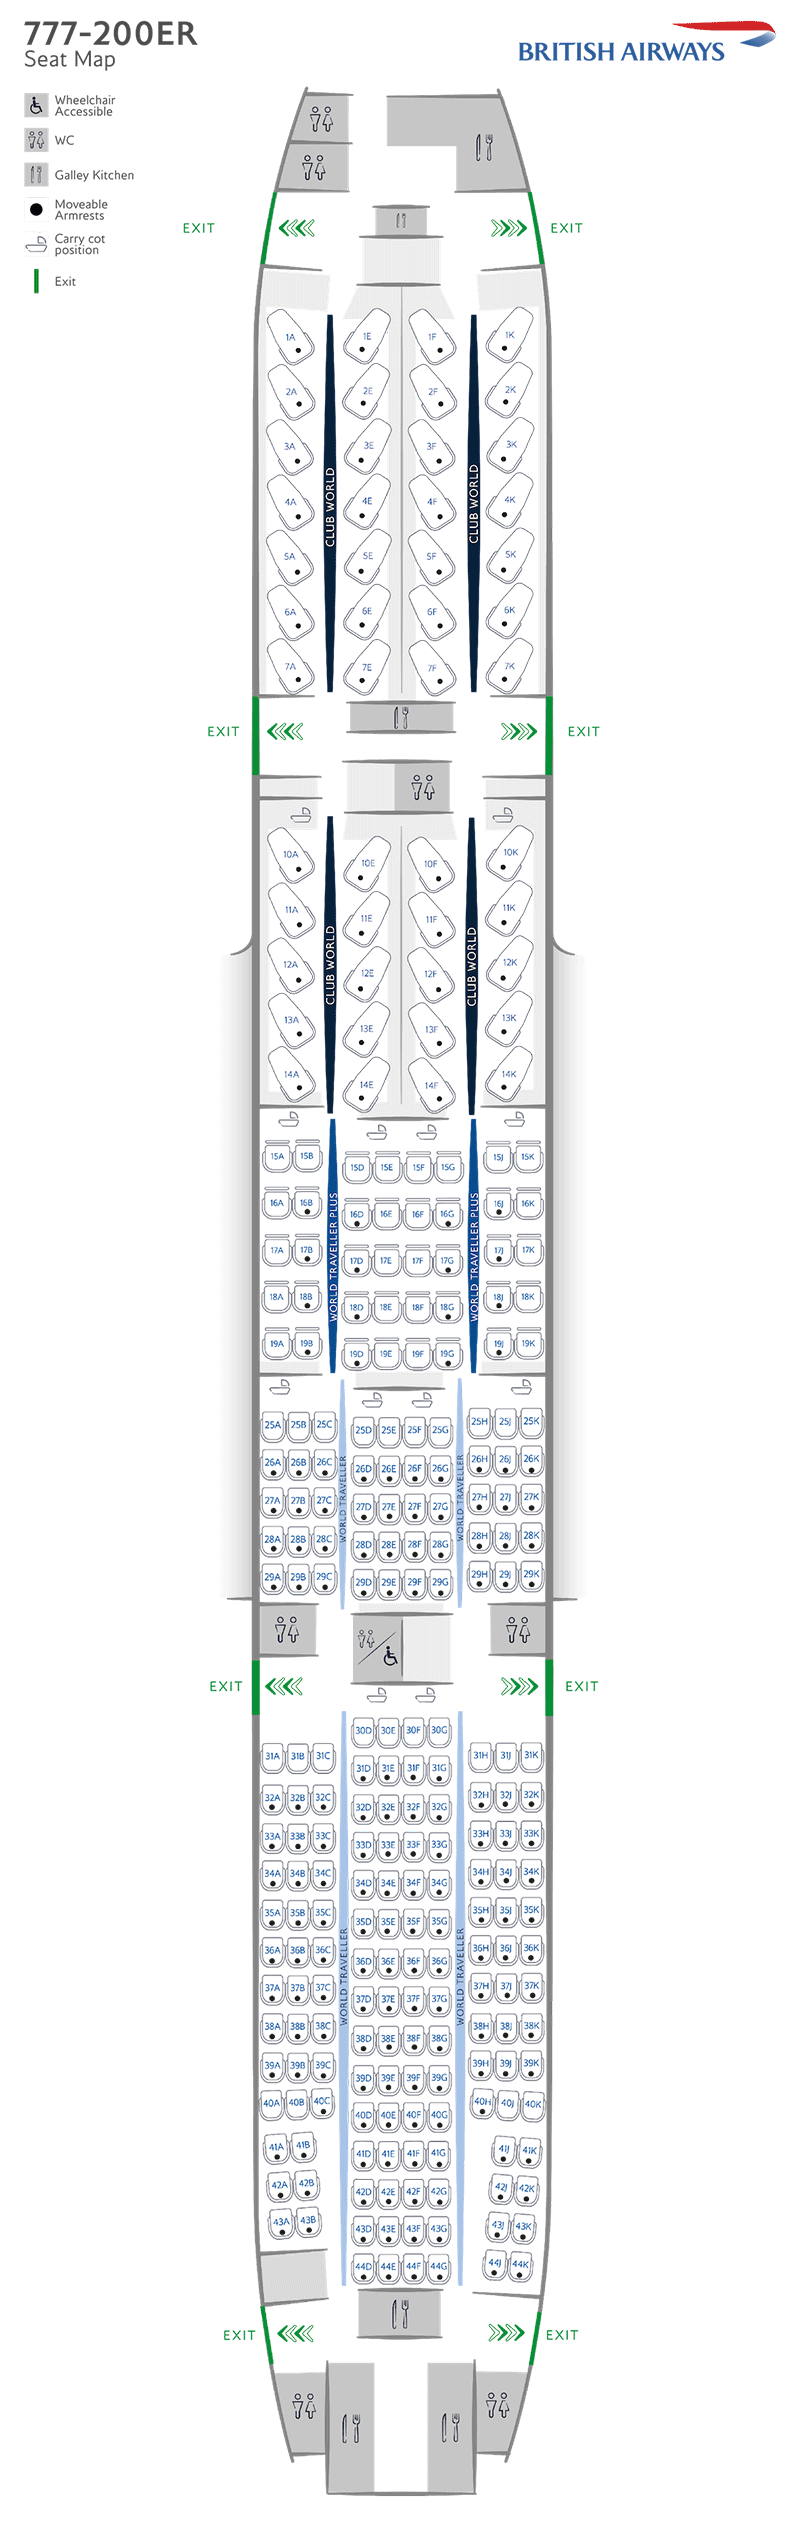 B777-200ER 座位图